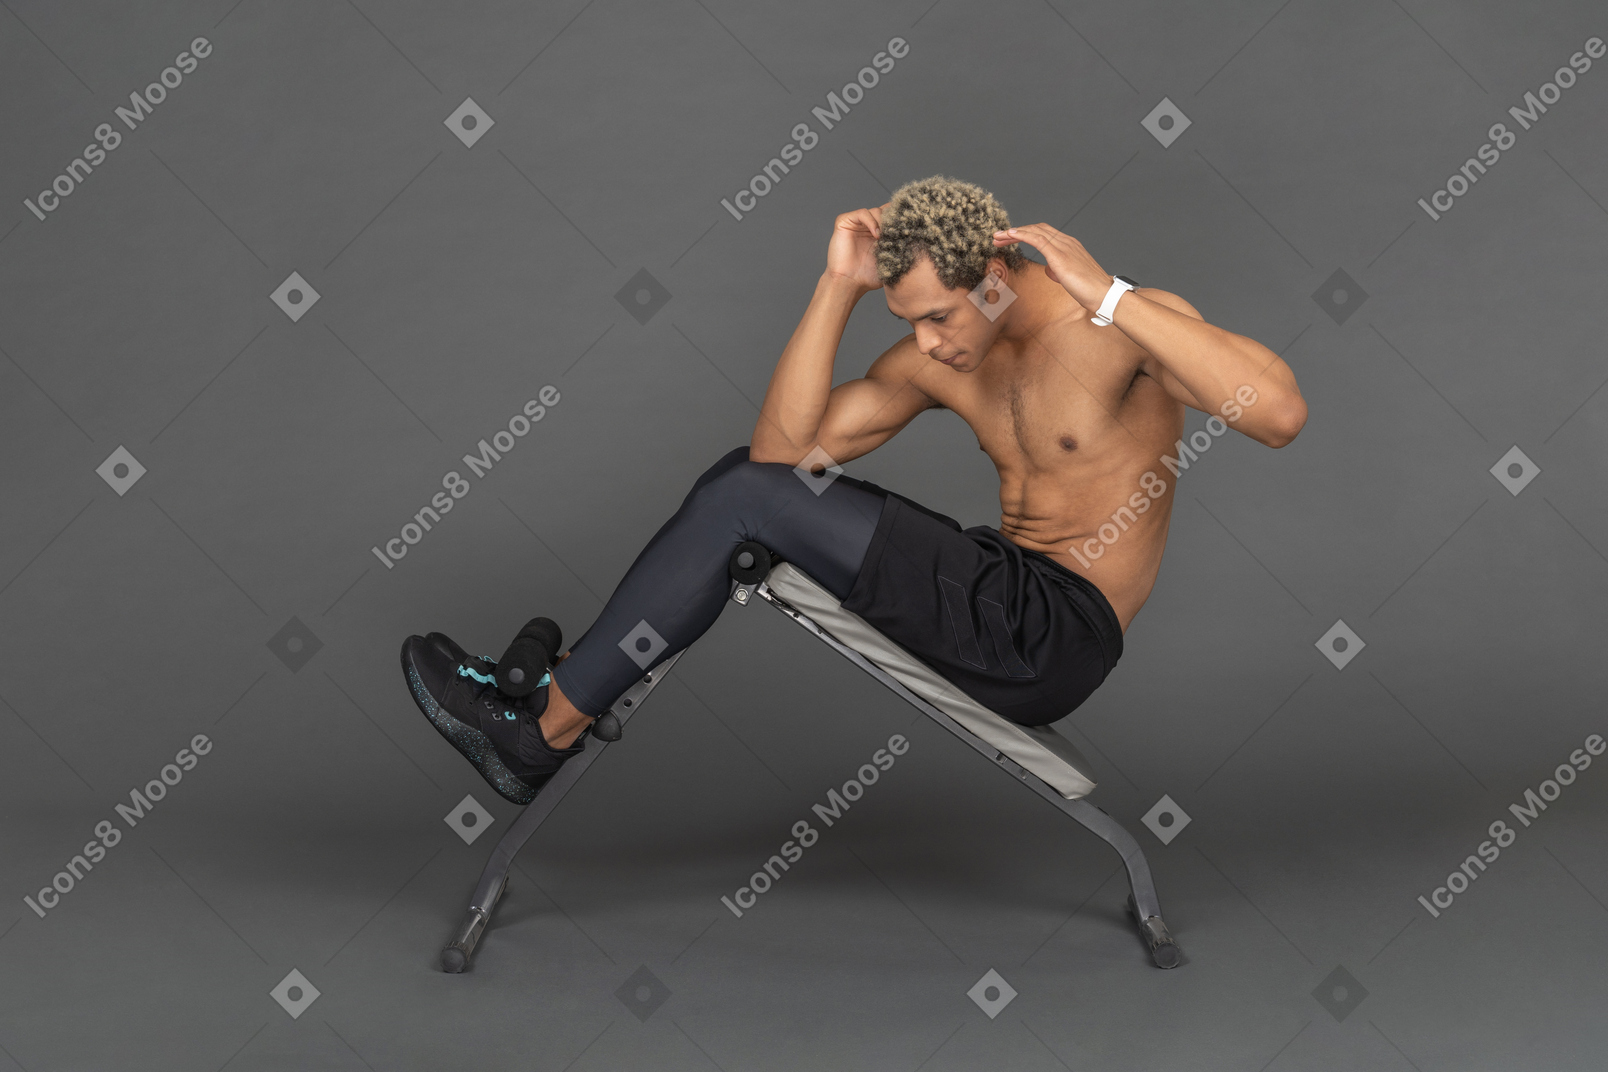 ベンチで腹筋運動をしている男性